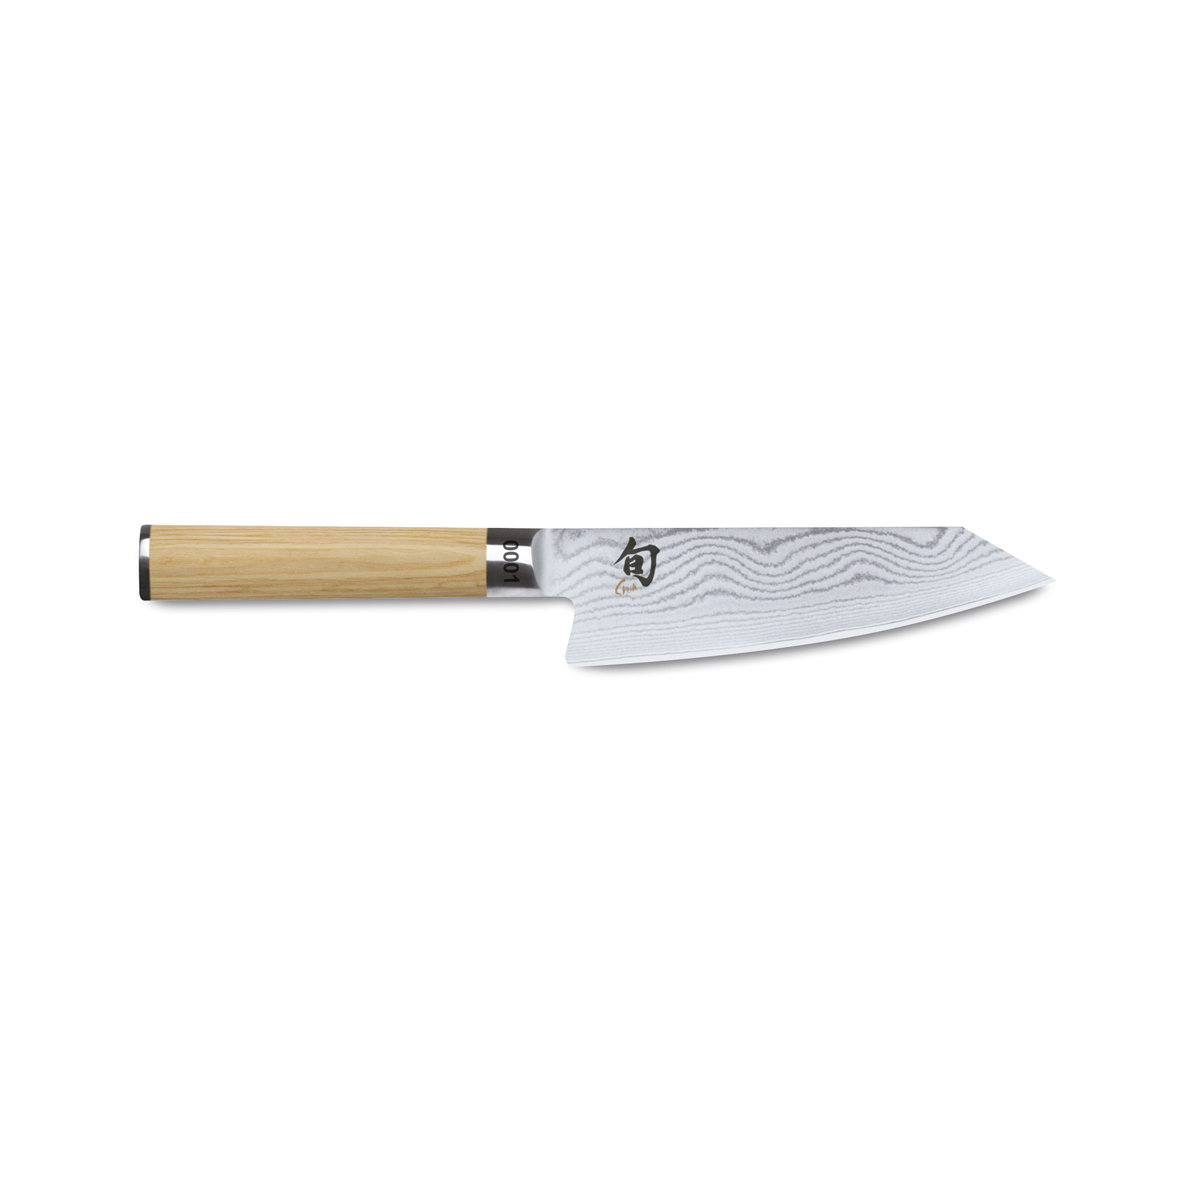 KAI Shun Classic White limitiertes Kiritsukemesser 15 cm / 32-lagiger Damaststahl mit Griff aus hellem Pakkaholz